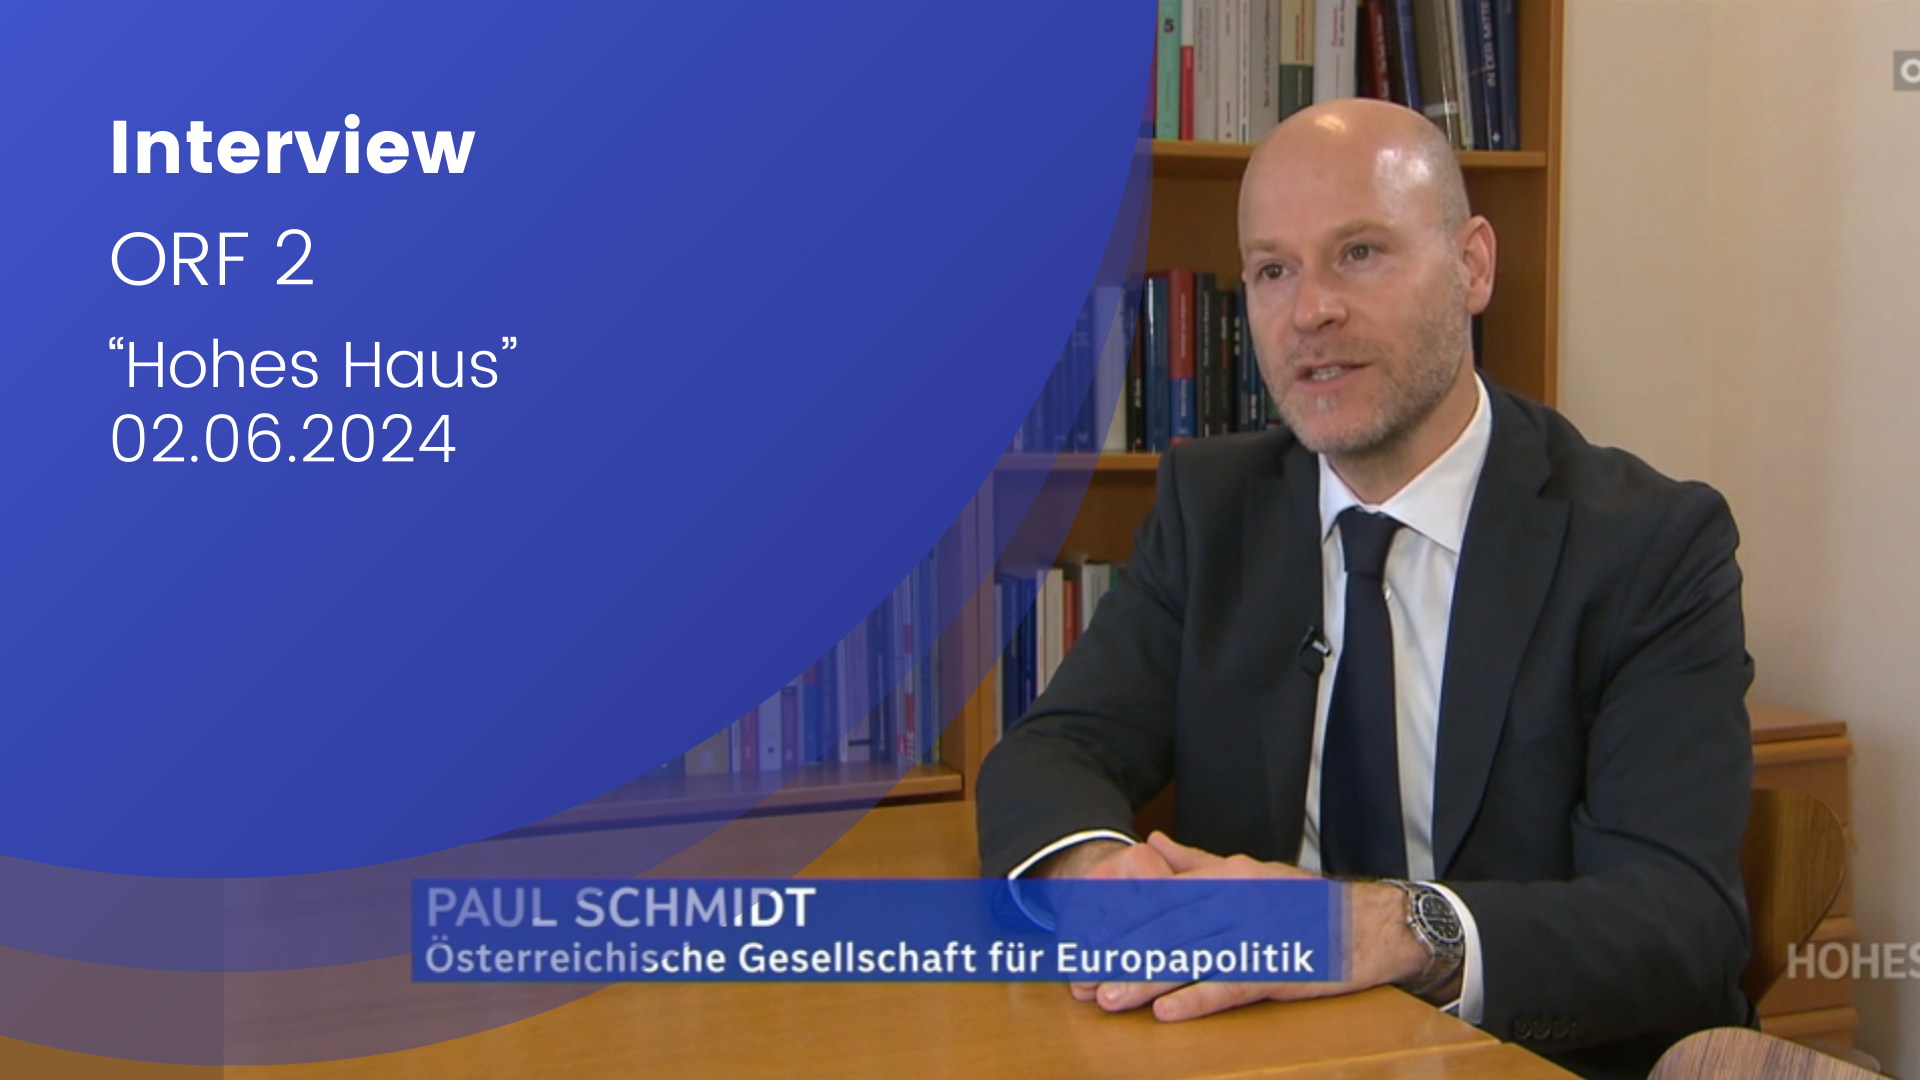 Paul Schmidt ist im Bild zu sehen. Er trägt einen Anzug. EU-Wahl; national; Österreicher:innen; Wahlrecht;